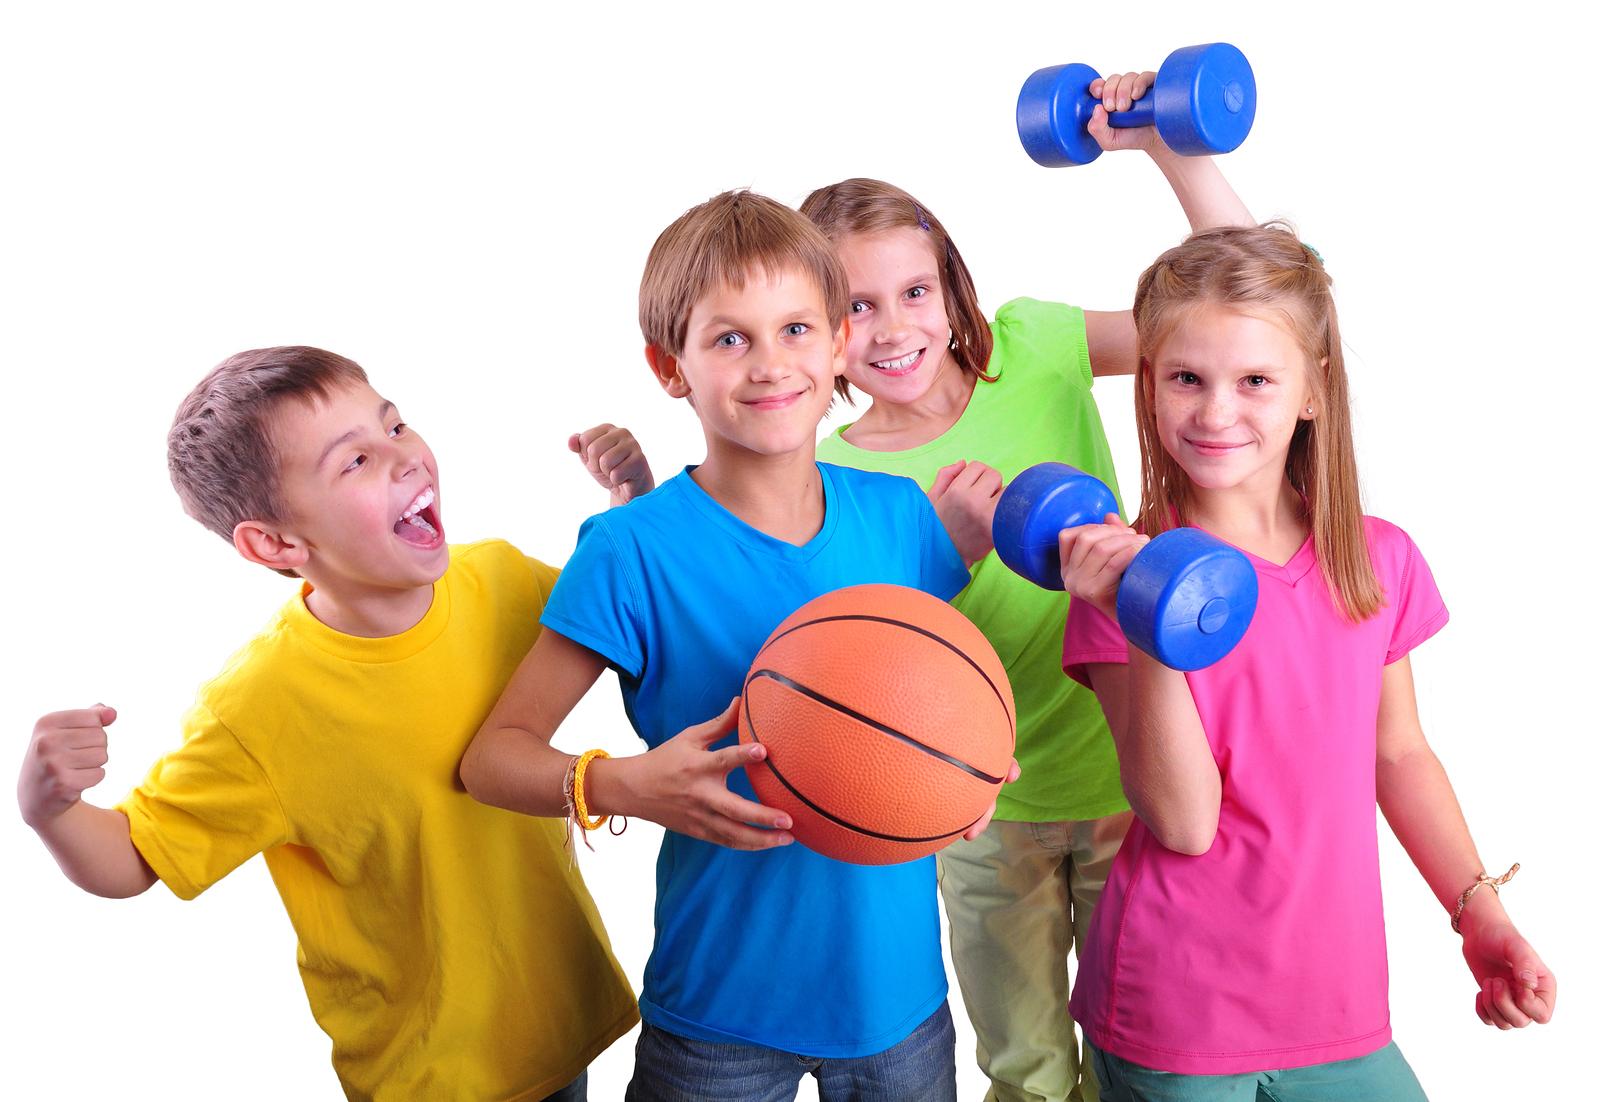 Vježba utječe na pravilan tjelesni razvoj djeteta - Avaz